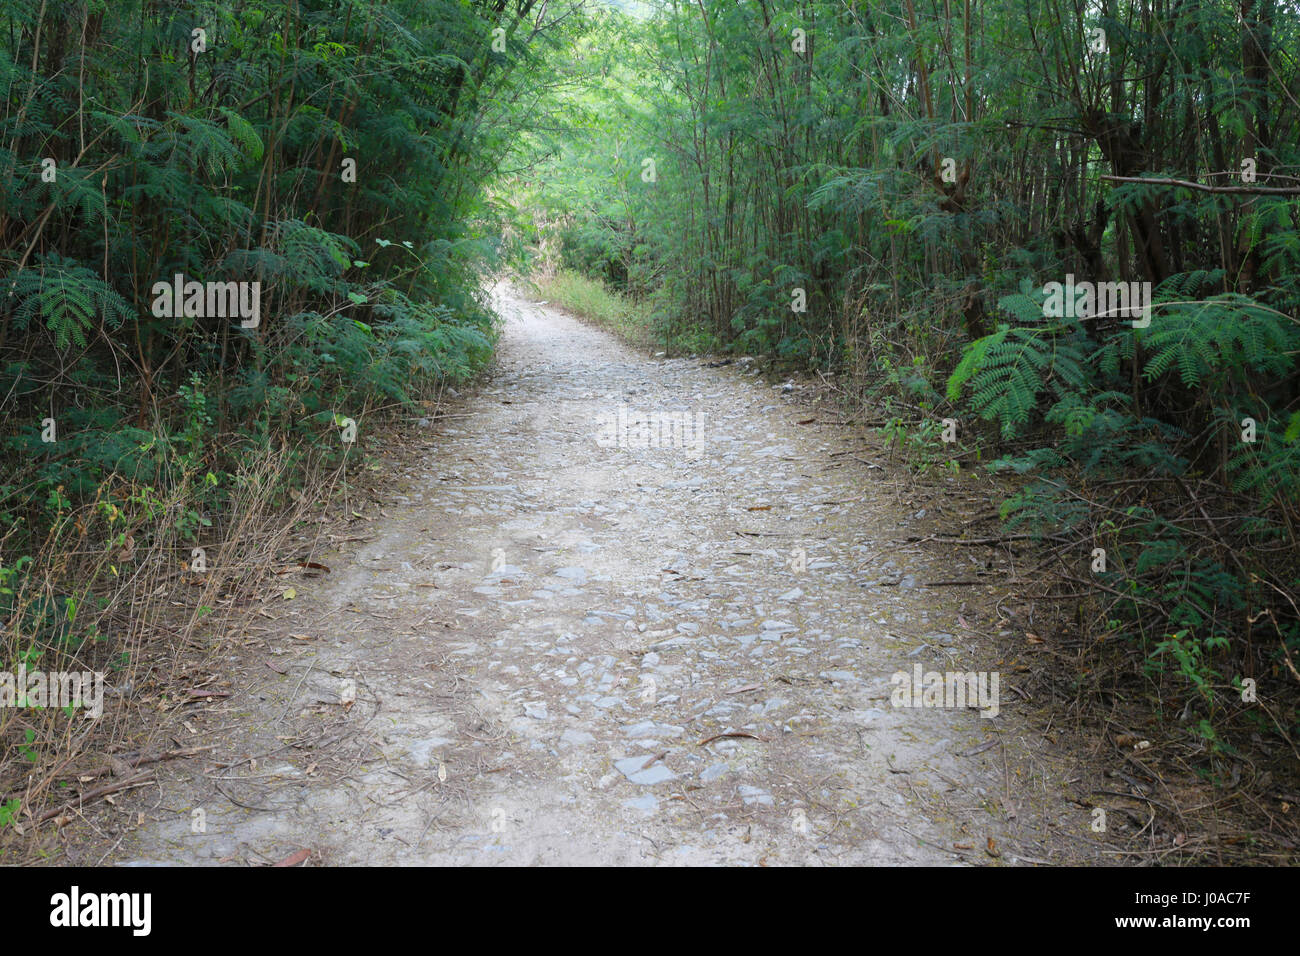 Vecchia strada nella foresta ricoperta di verde di alberi tropicali. Foto Stock